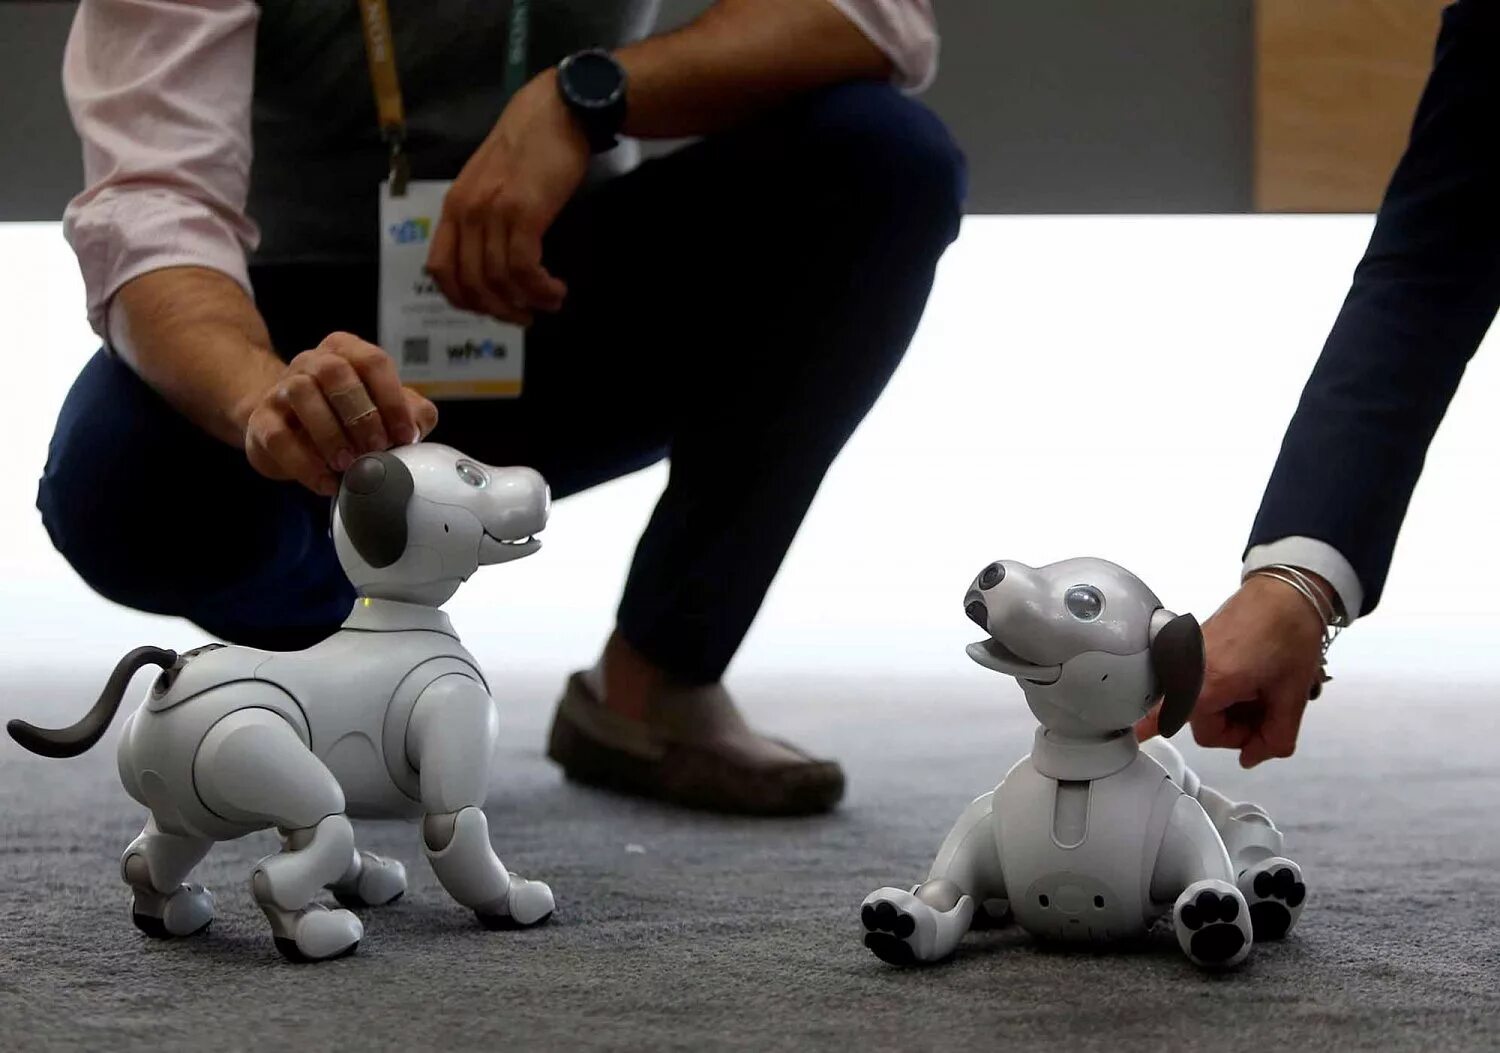 Robot de jole by gaspr. Собачка Aibo корпорации Sony. 2018. Японская собака робот. Робот собака с искусственным интеллектом. Робот собака большая.